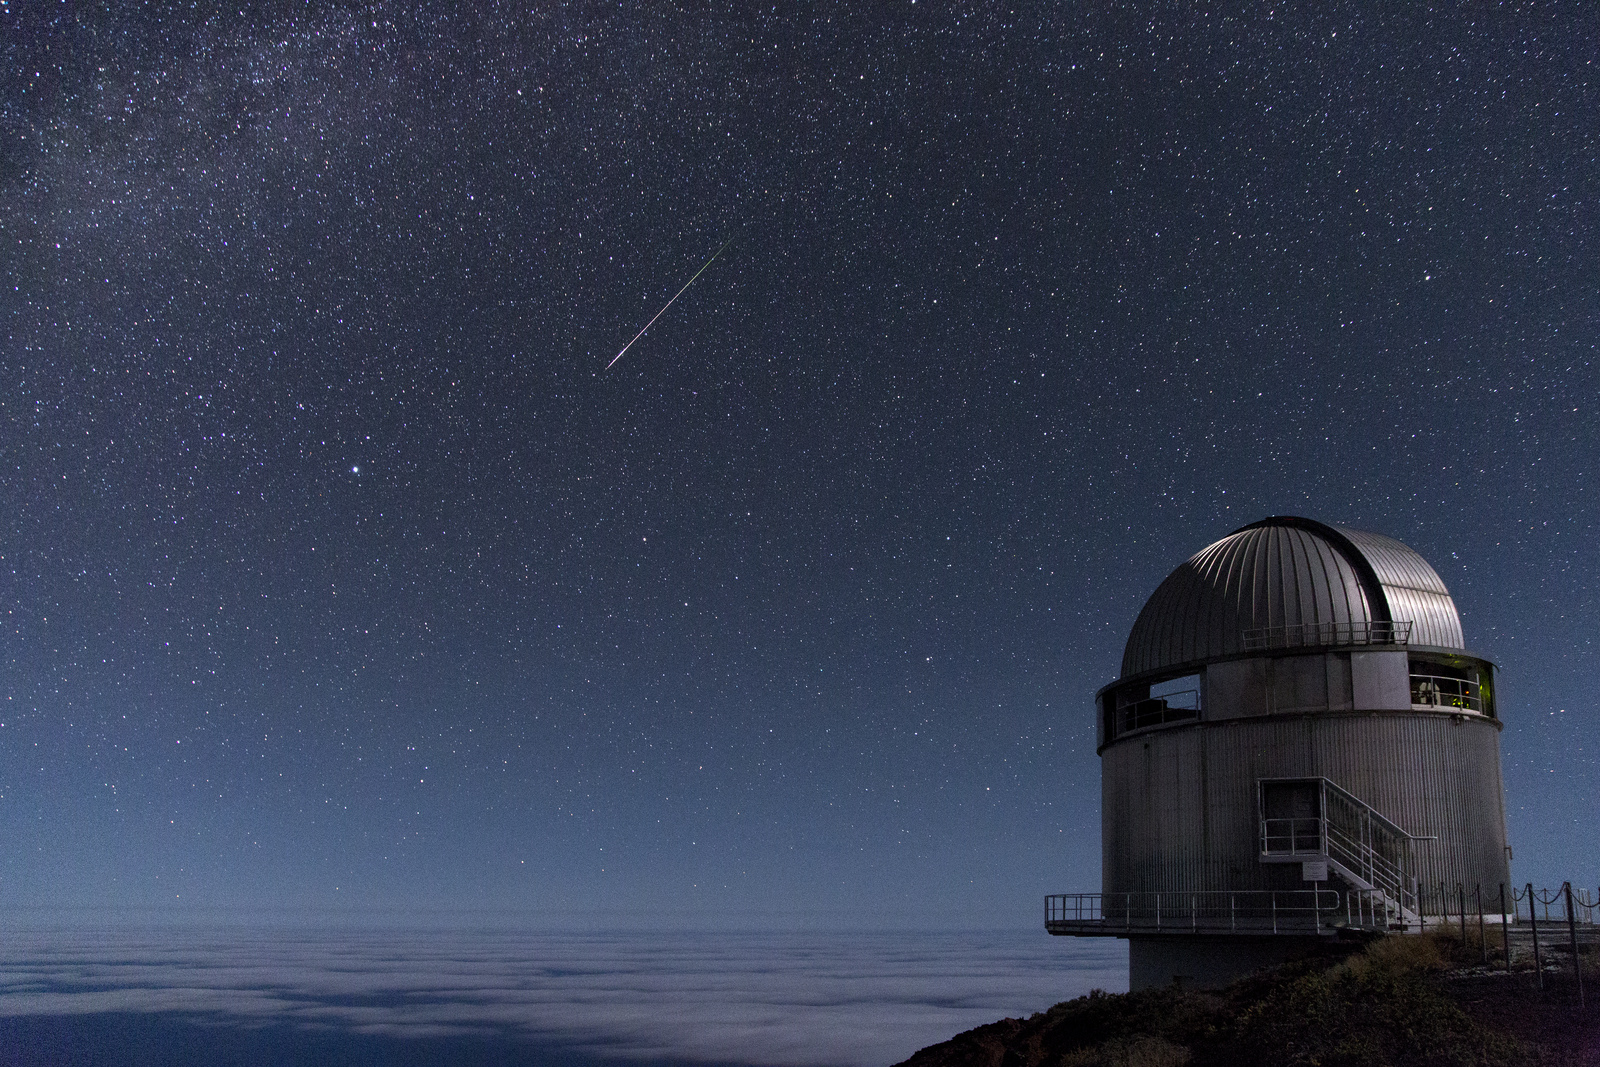 [Translate to English:] Observatoriet fotograferet en stjerneklar nat, mens en meteor trækker en hvid stribe henover himlen.